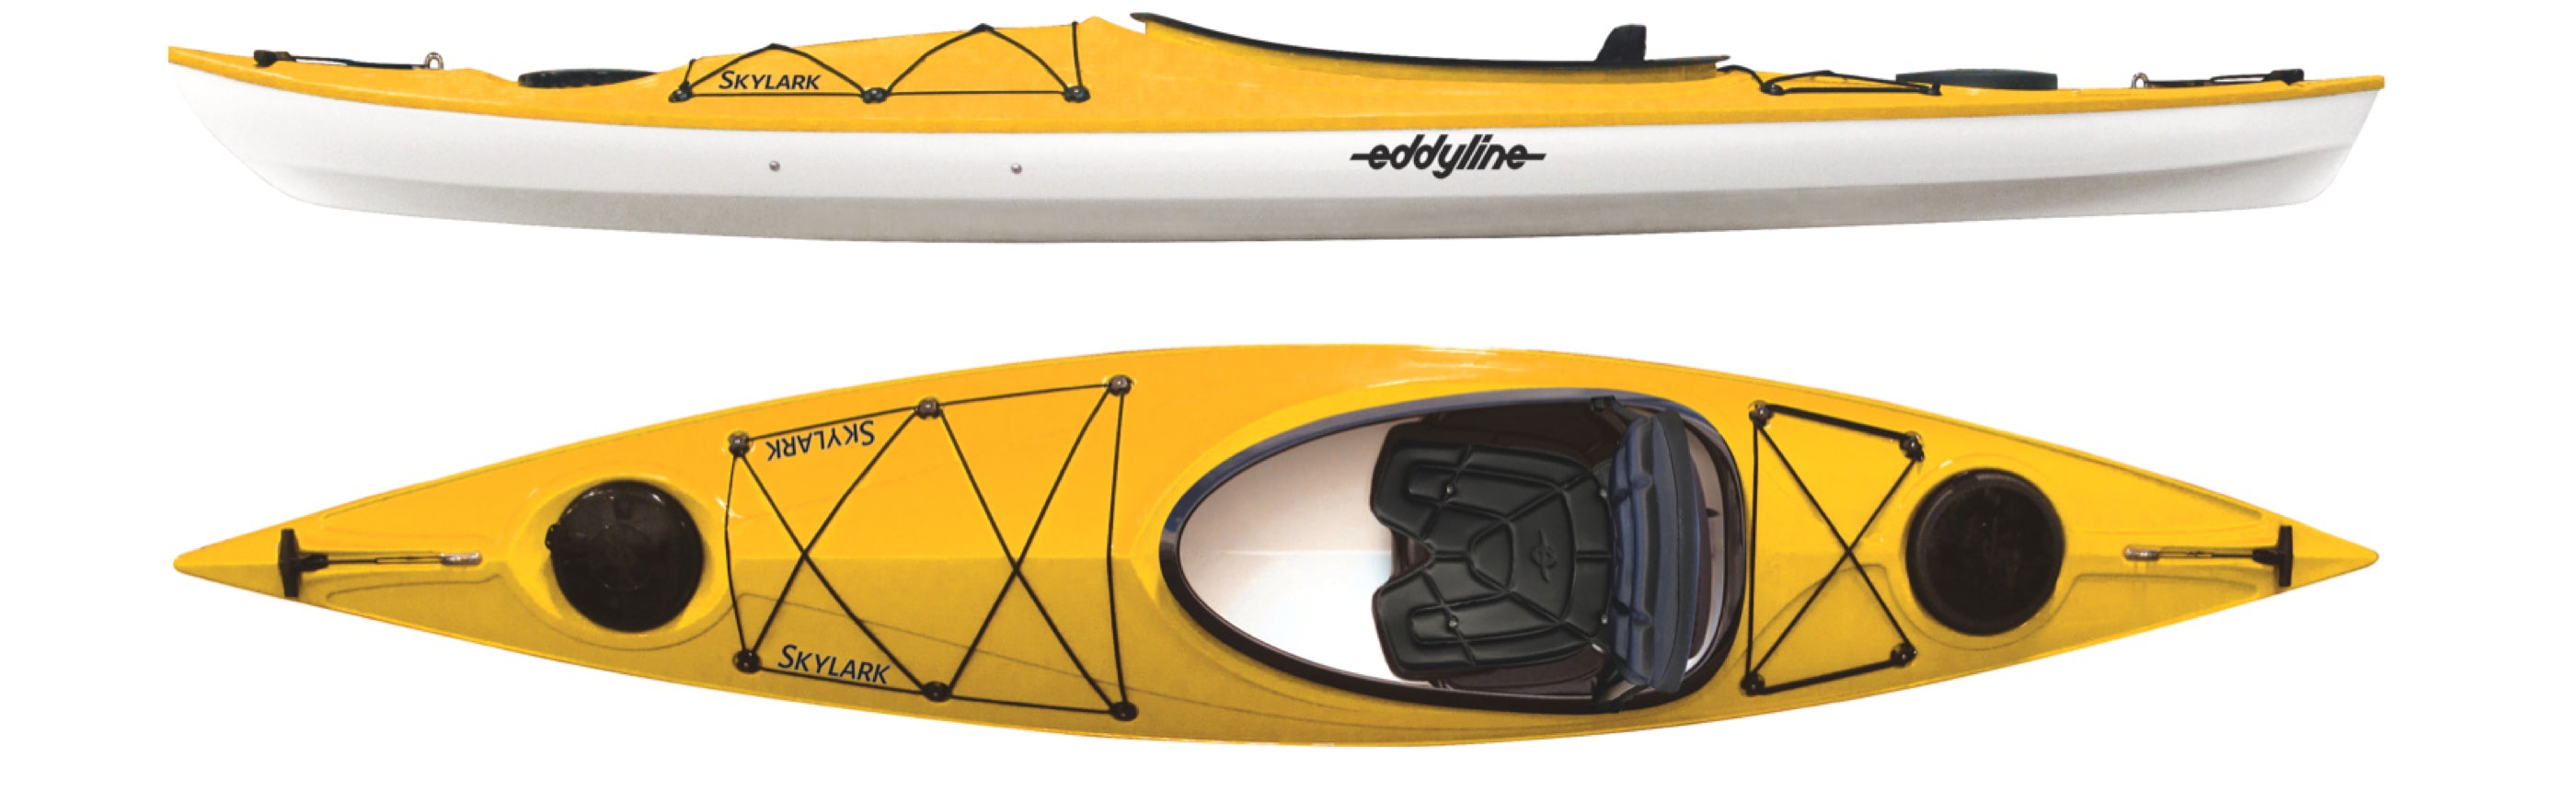 Eddyline Skylark 12' Recreational Kayak